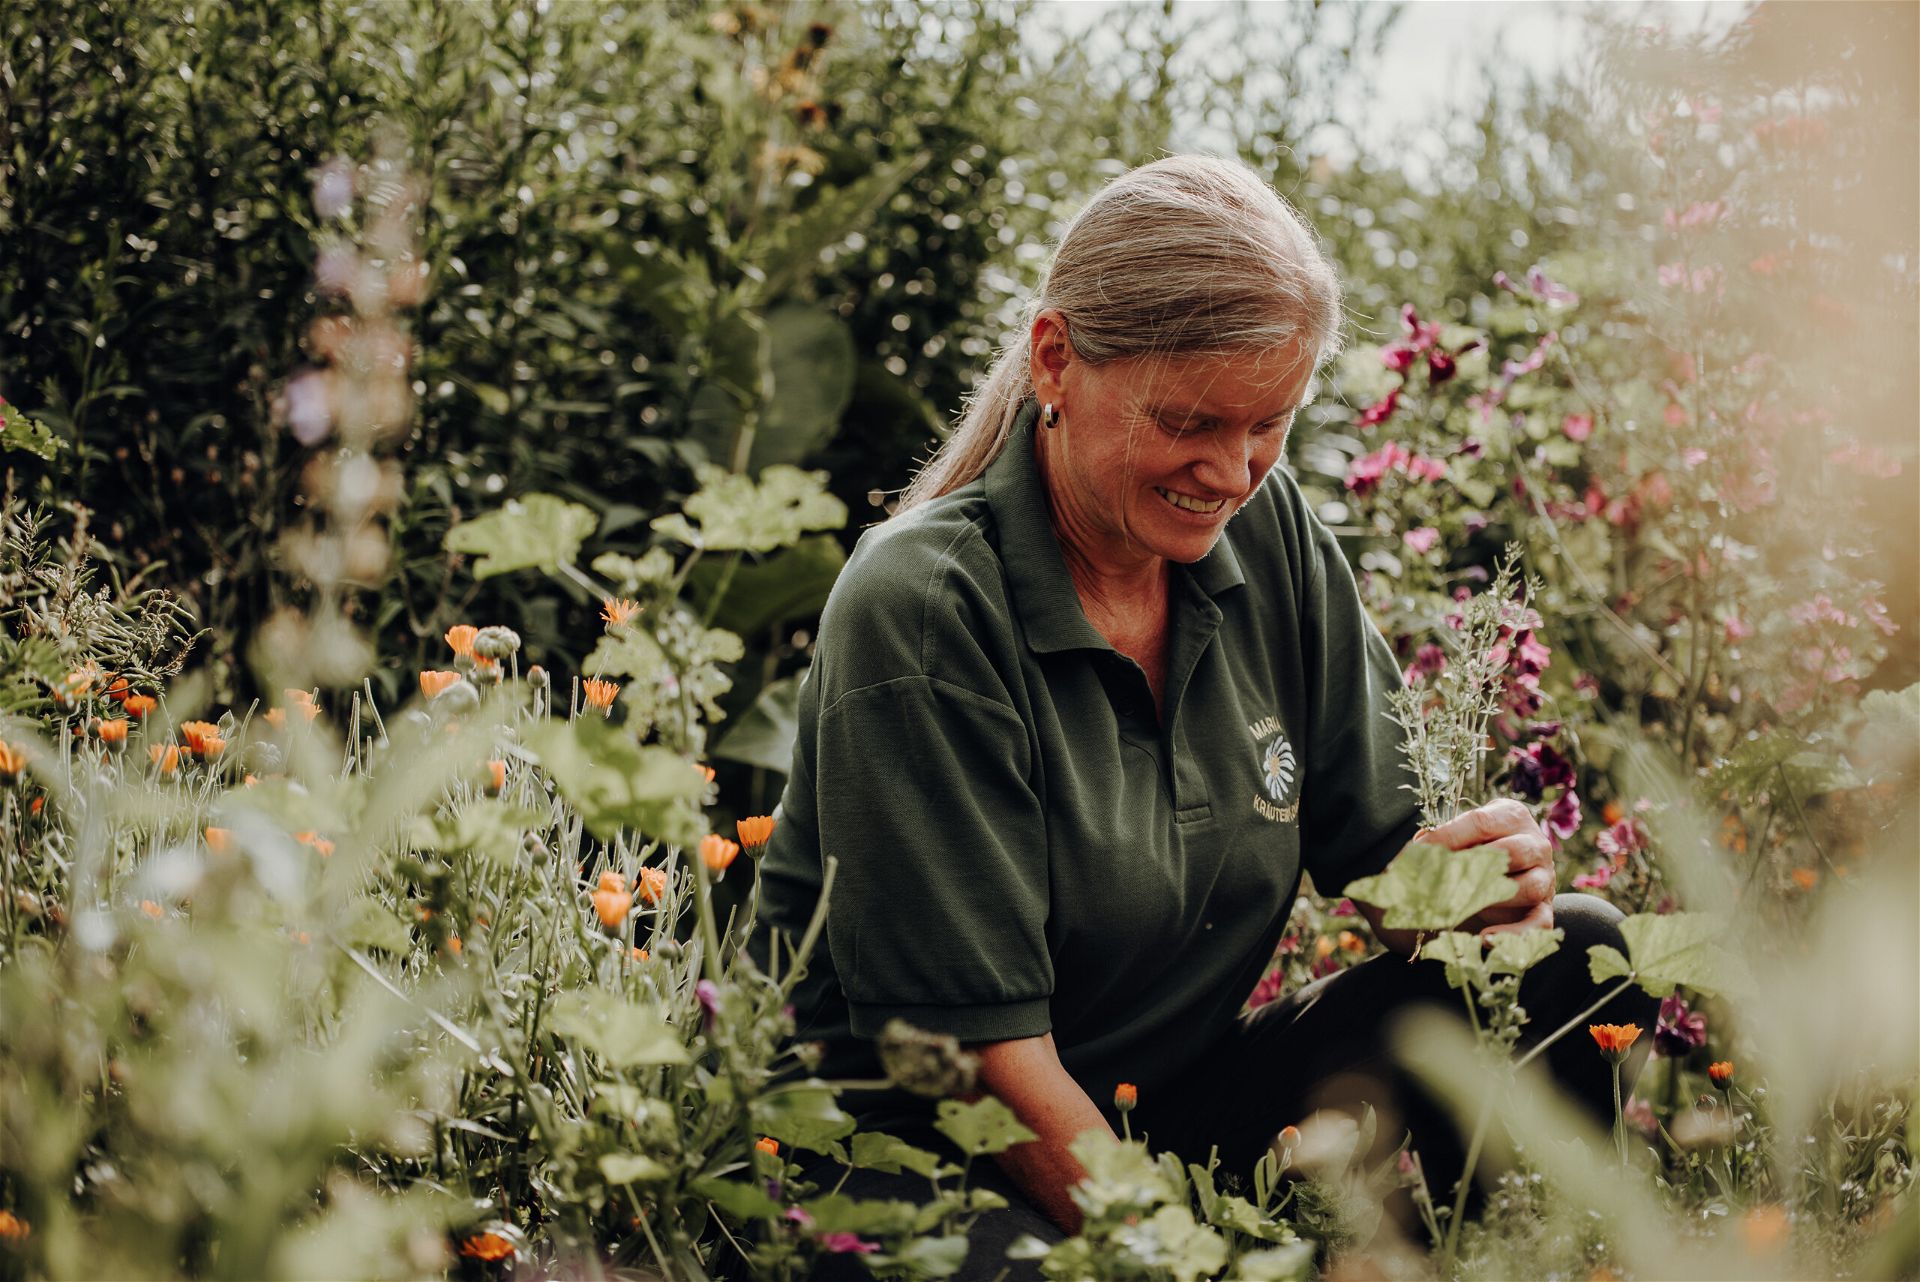 Eine ältere Frau sammelt Kräuter in der Natur, ihre Haare sind grau und zusammengebunden, sie ist umgeben von Pflanzen und lächelt.